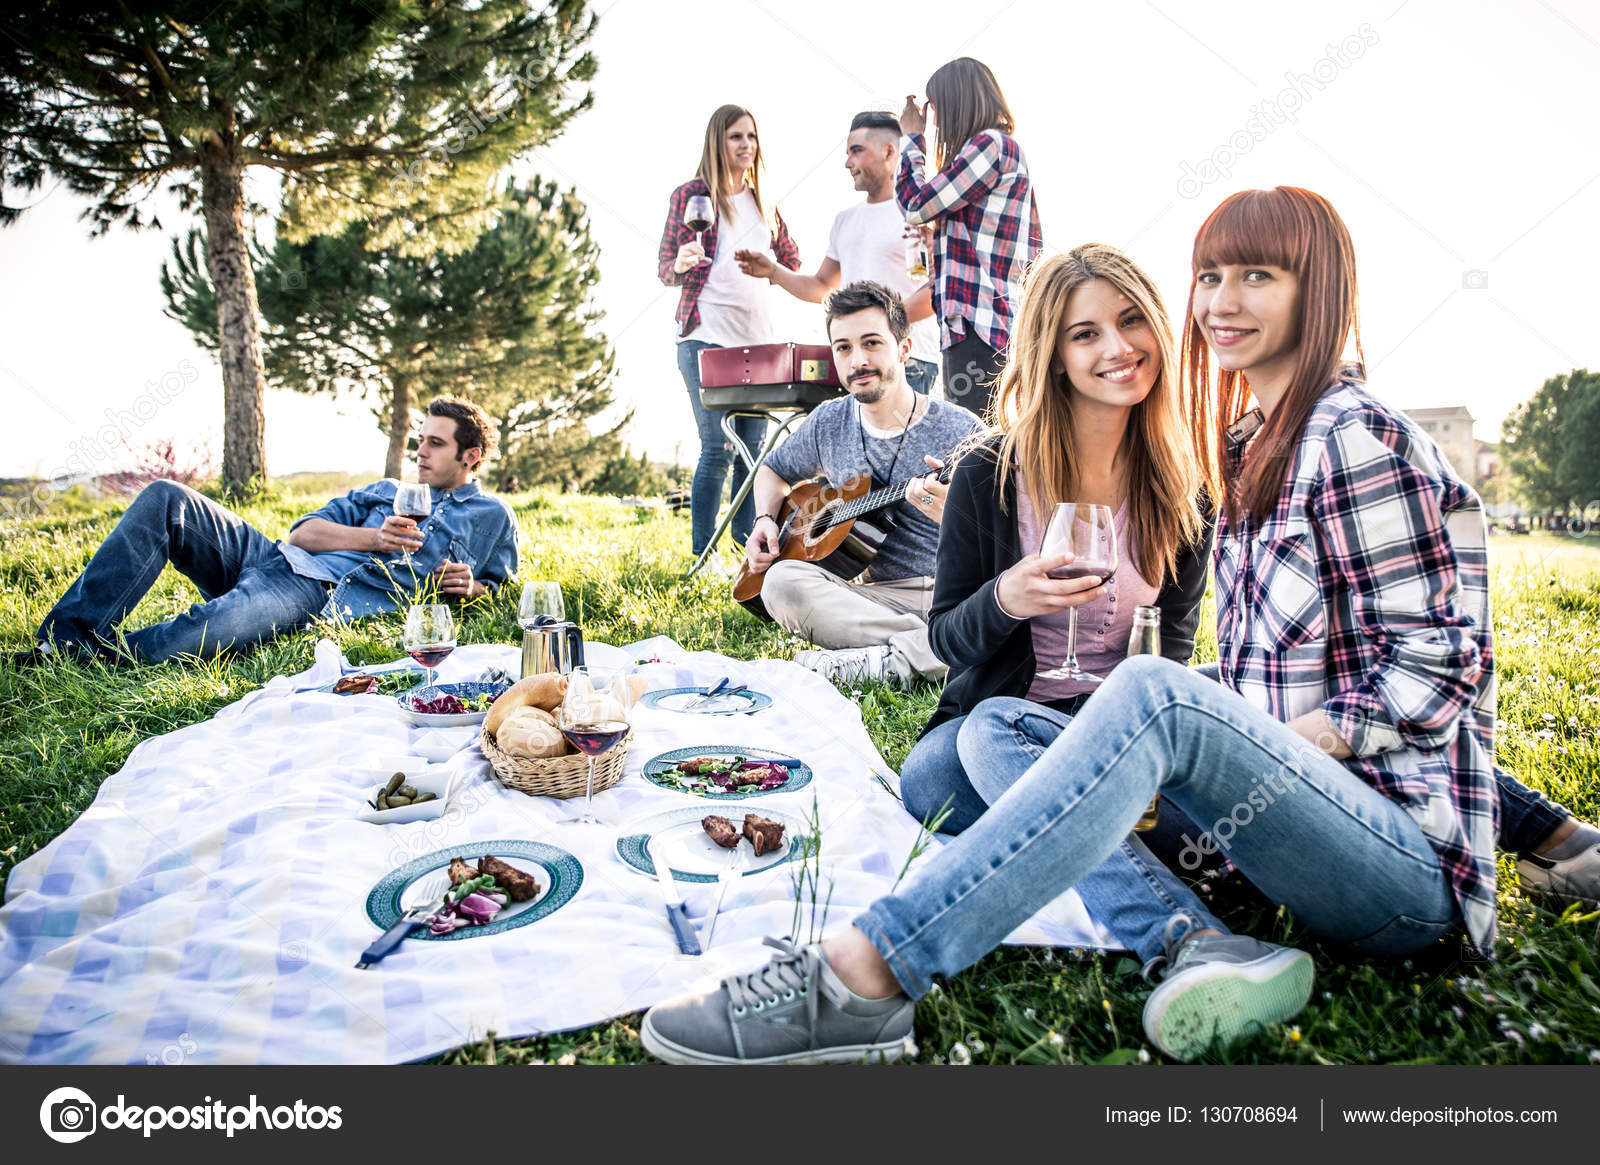 Едим веселые друзья. Люди на пикнике. Пикник с друзьями. Фотосессия пикник с друзьями. Молодежь на пикнике.